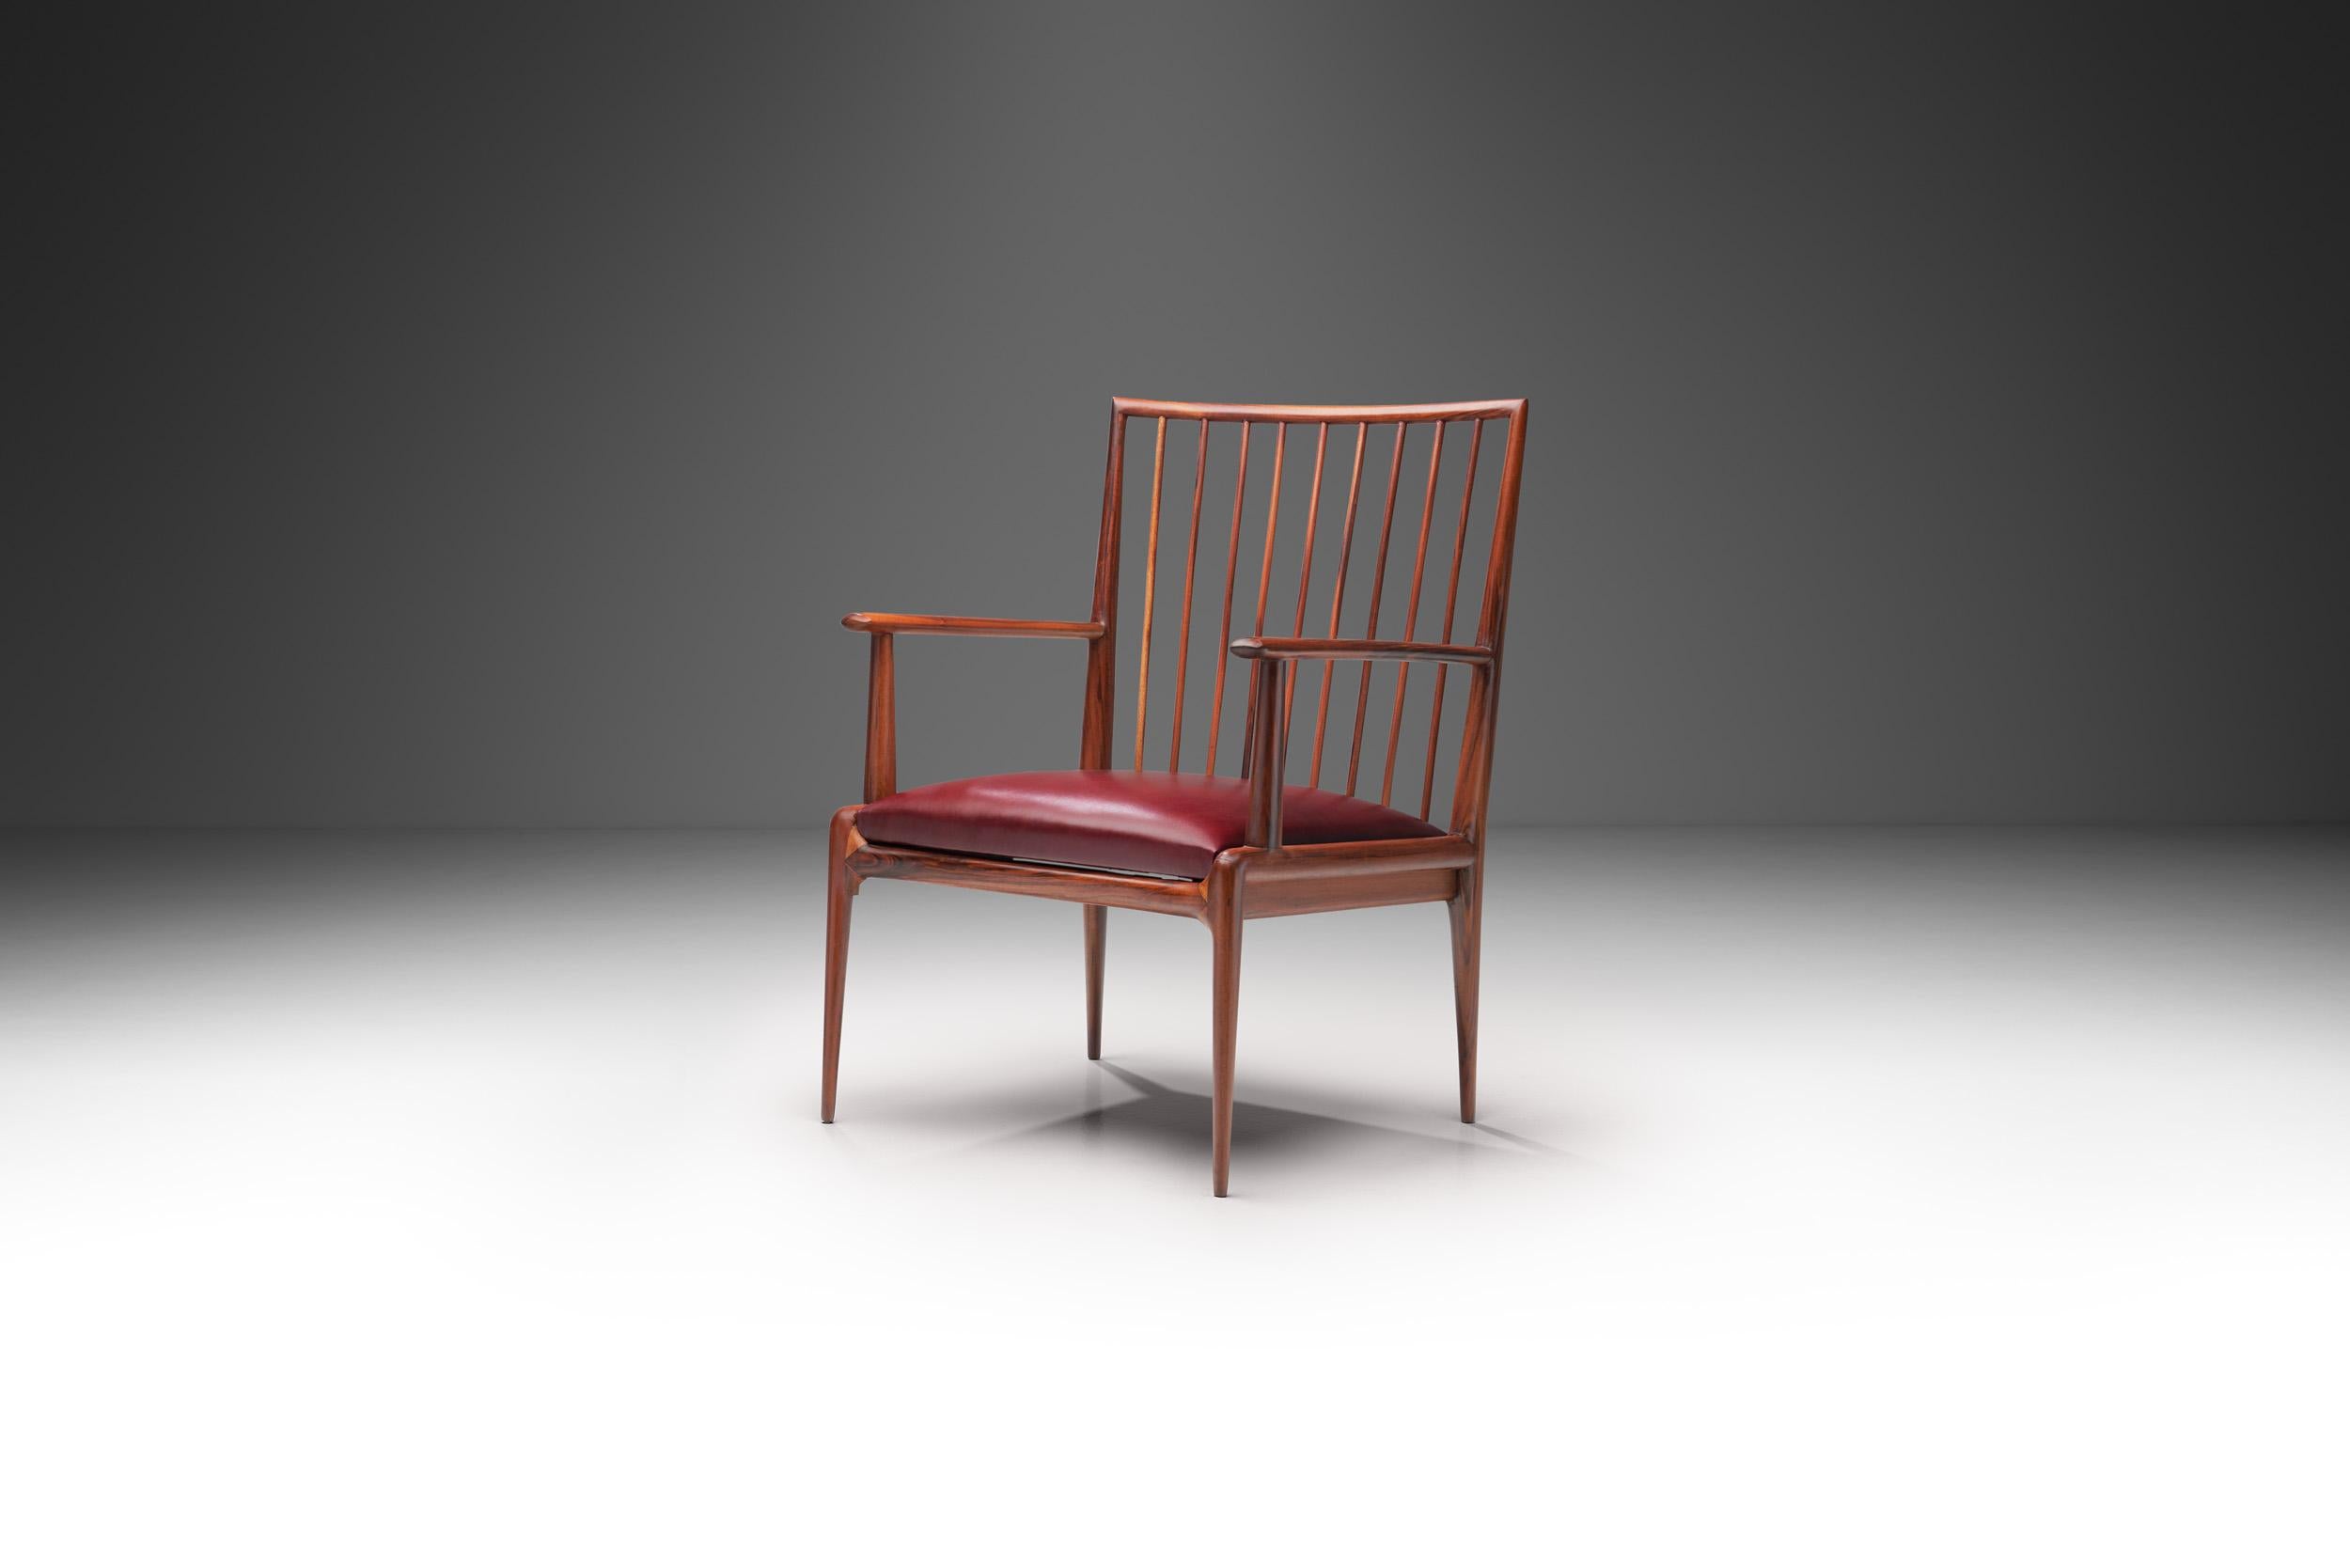 Ce rare fauteuil brésilien du milieu du siècle est attribué au collectif de designers Branco et Preto. Fabriqués de manière rationnelle et géométrique, ils présentent légèreté et simplicité.

Cette chaise est sculptée dans du bois brésilien de façon